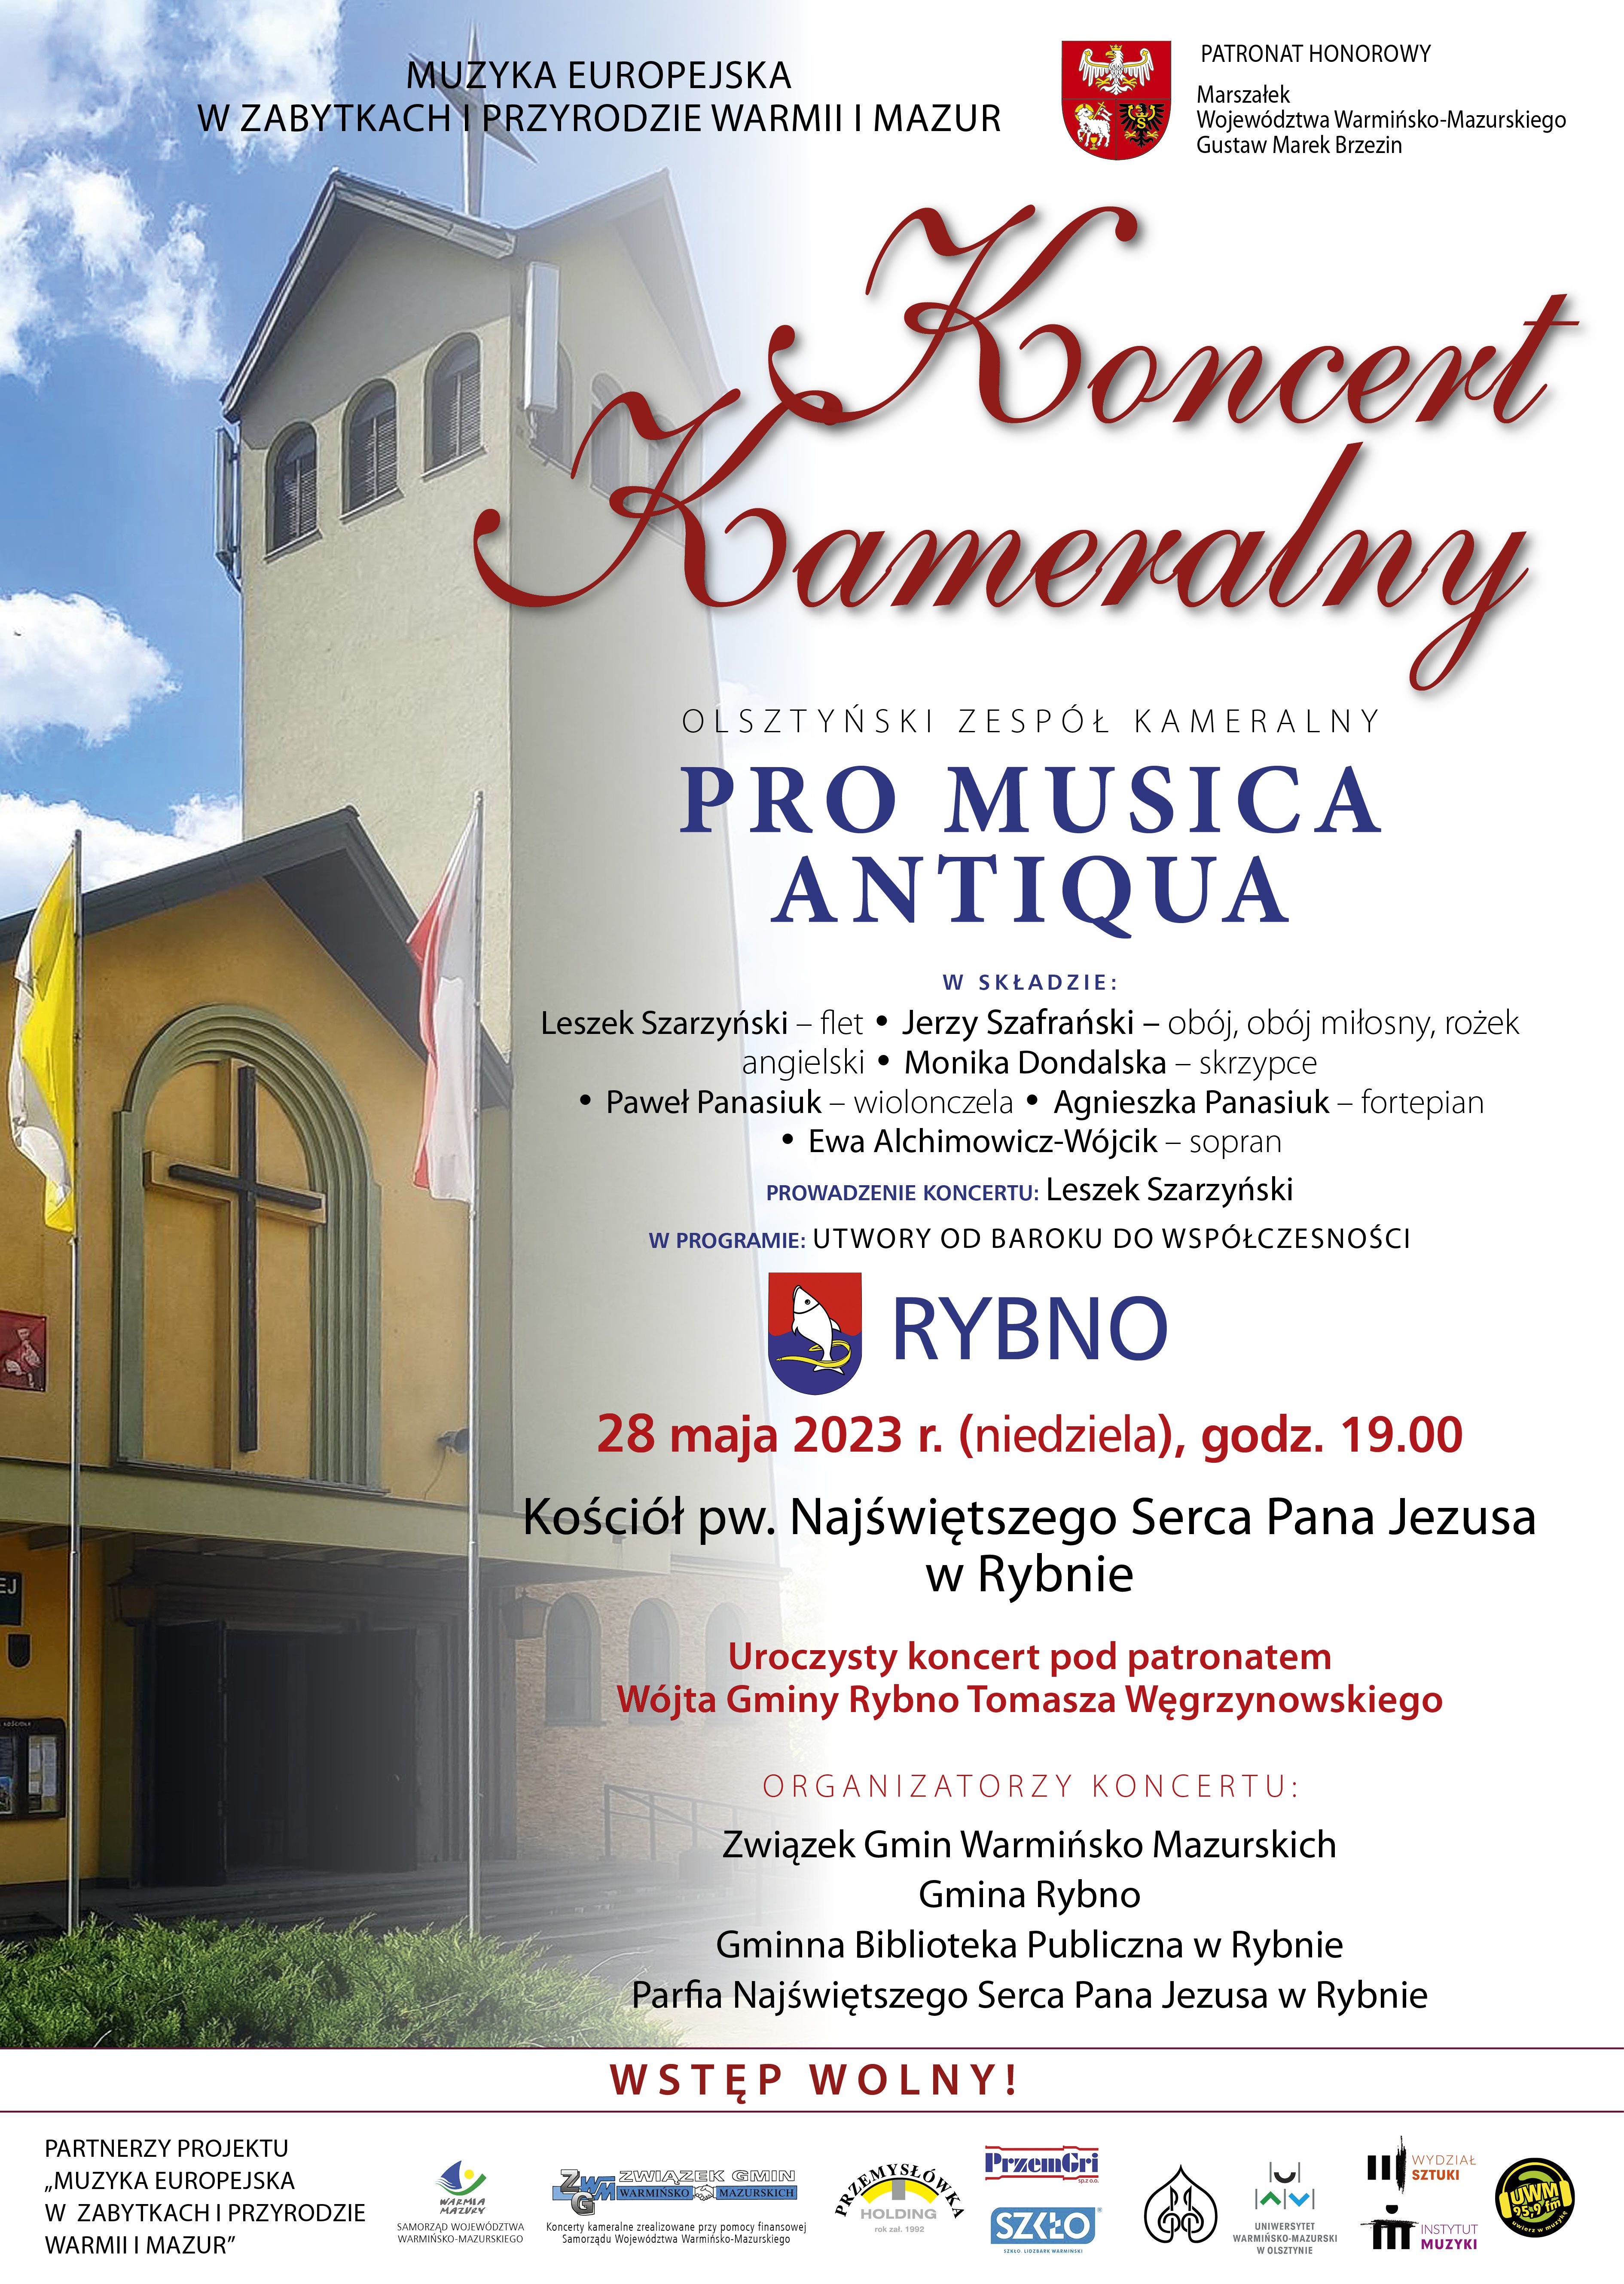 plakat informujący o Koncercie Kameralnym w wykonaniu Olsztyńskiego Zespołu Kameralnego